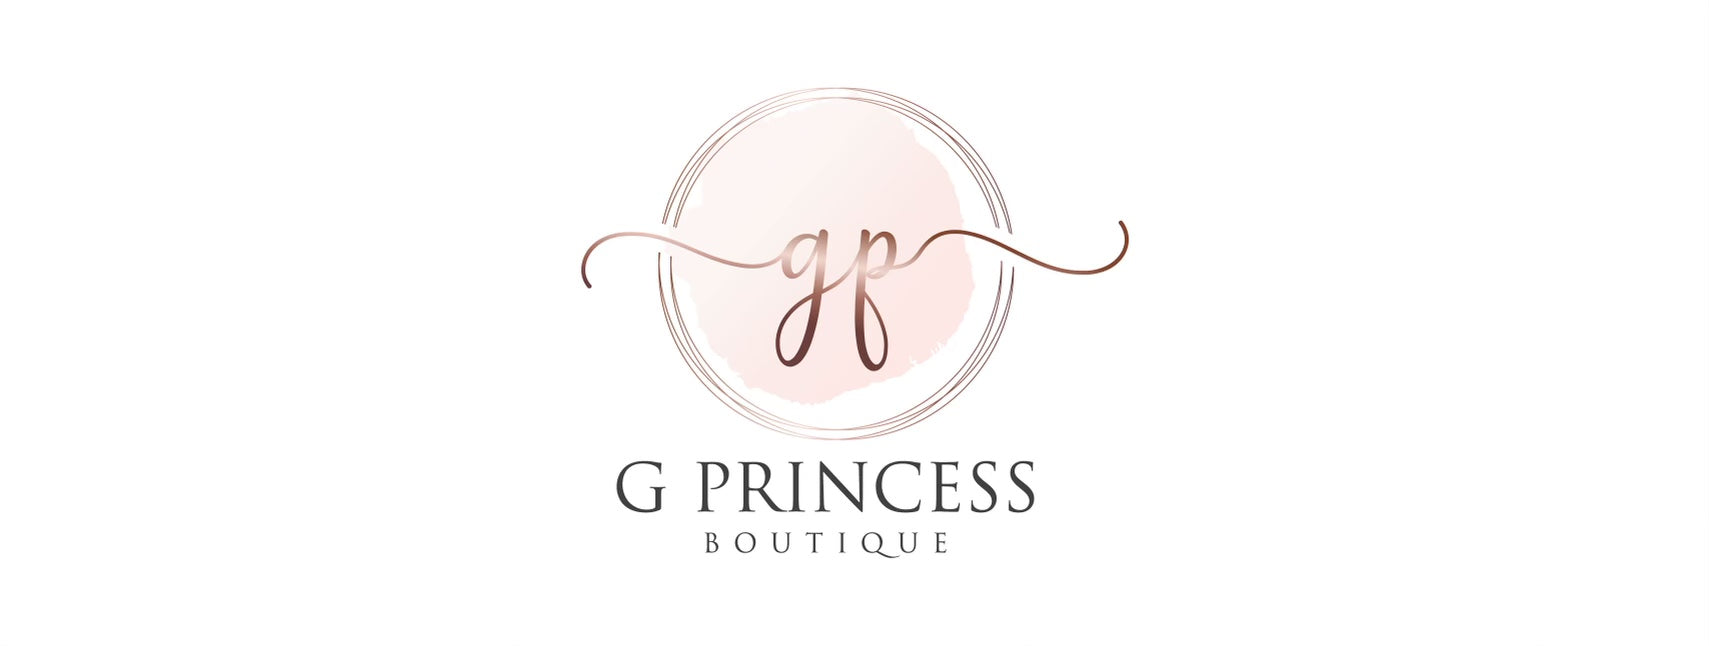 Princess-Boutique